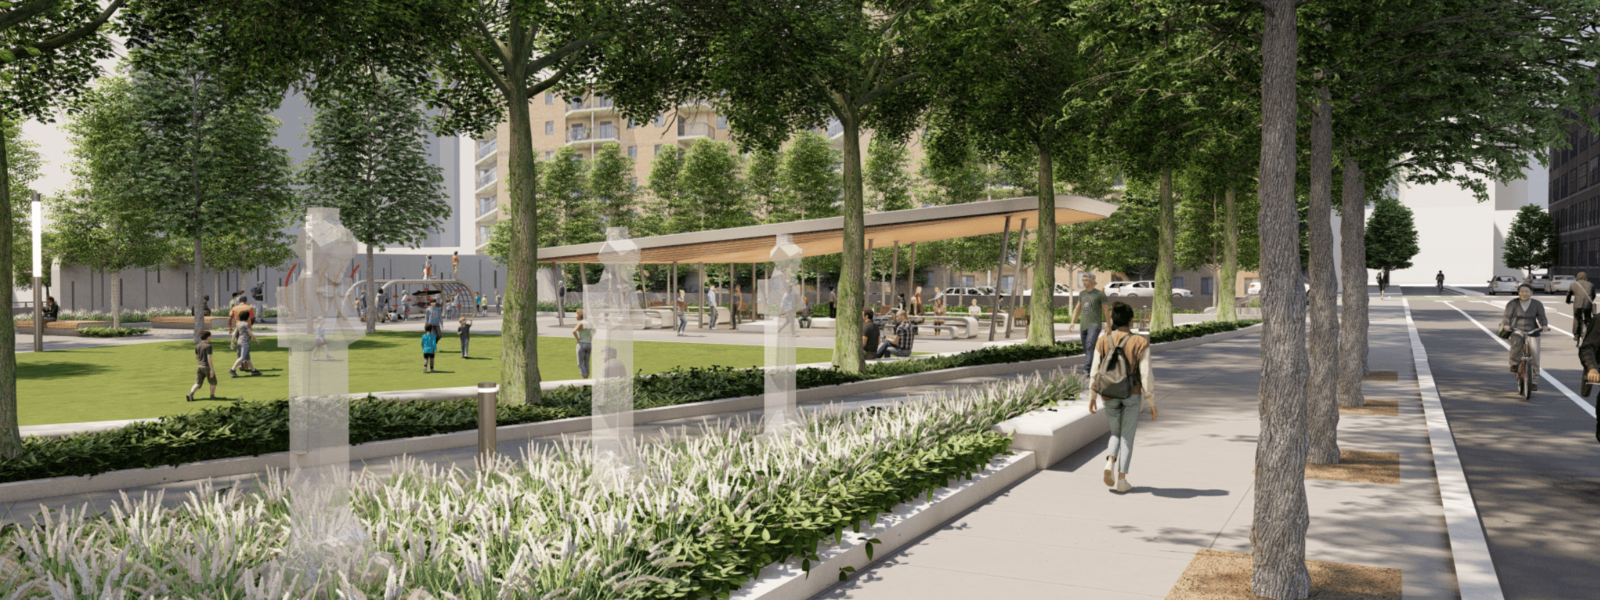 Construction Begins On Saint Paul’s Newest Park